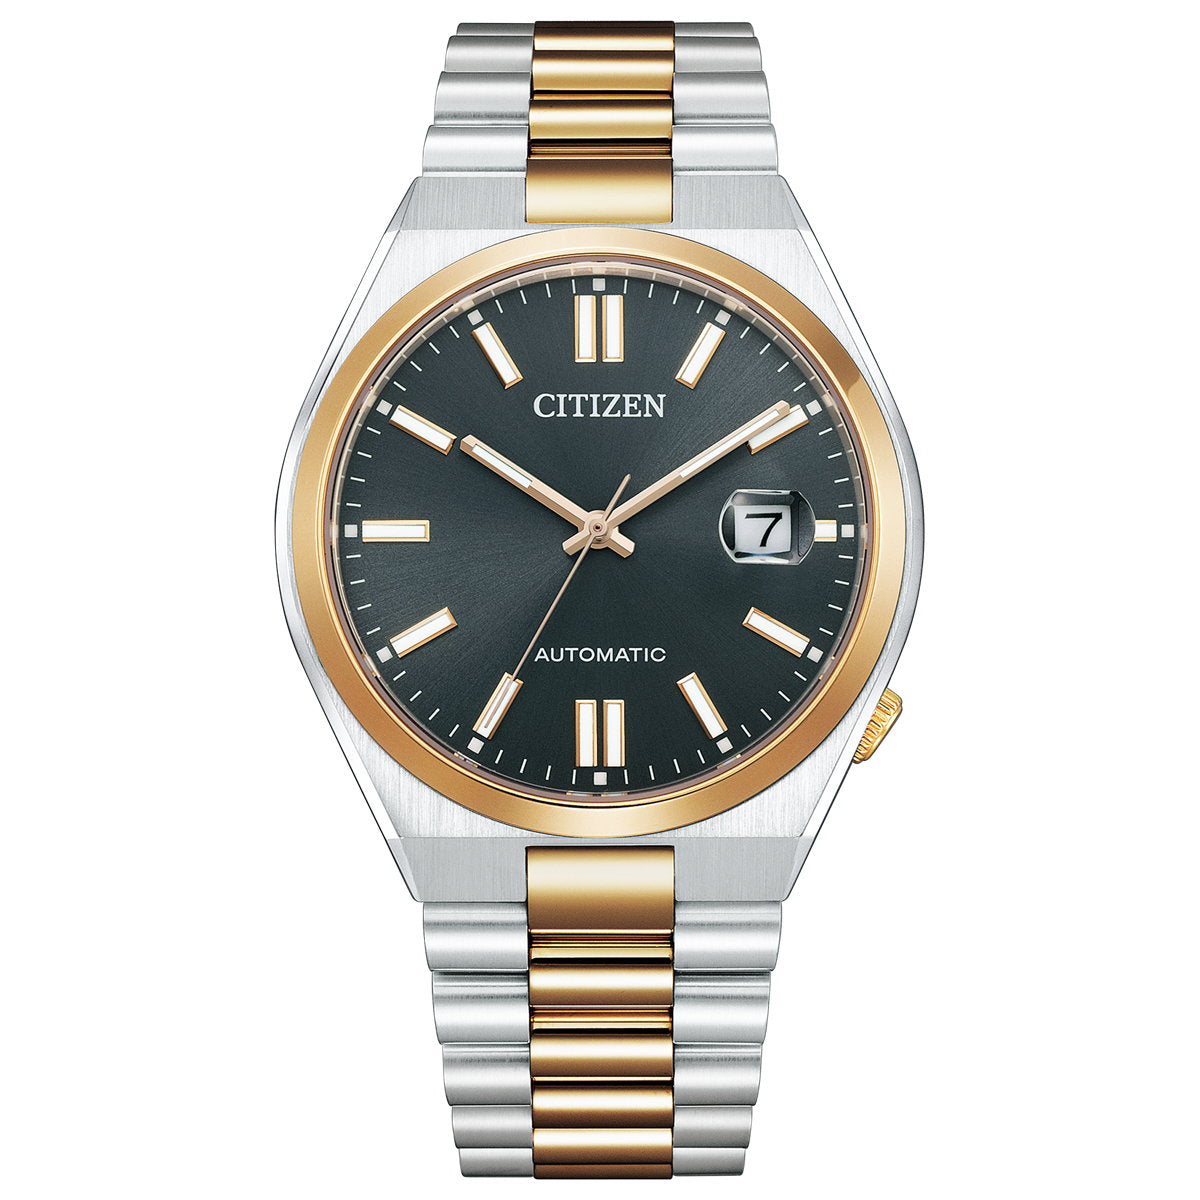 シチズンコレクション CITIZEN COLLECTION メカニカル 自動巻き 機械式 腕時計 メンズ NJ0154-80H TSUYOSA Collection